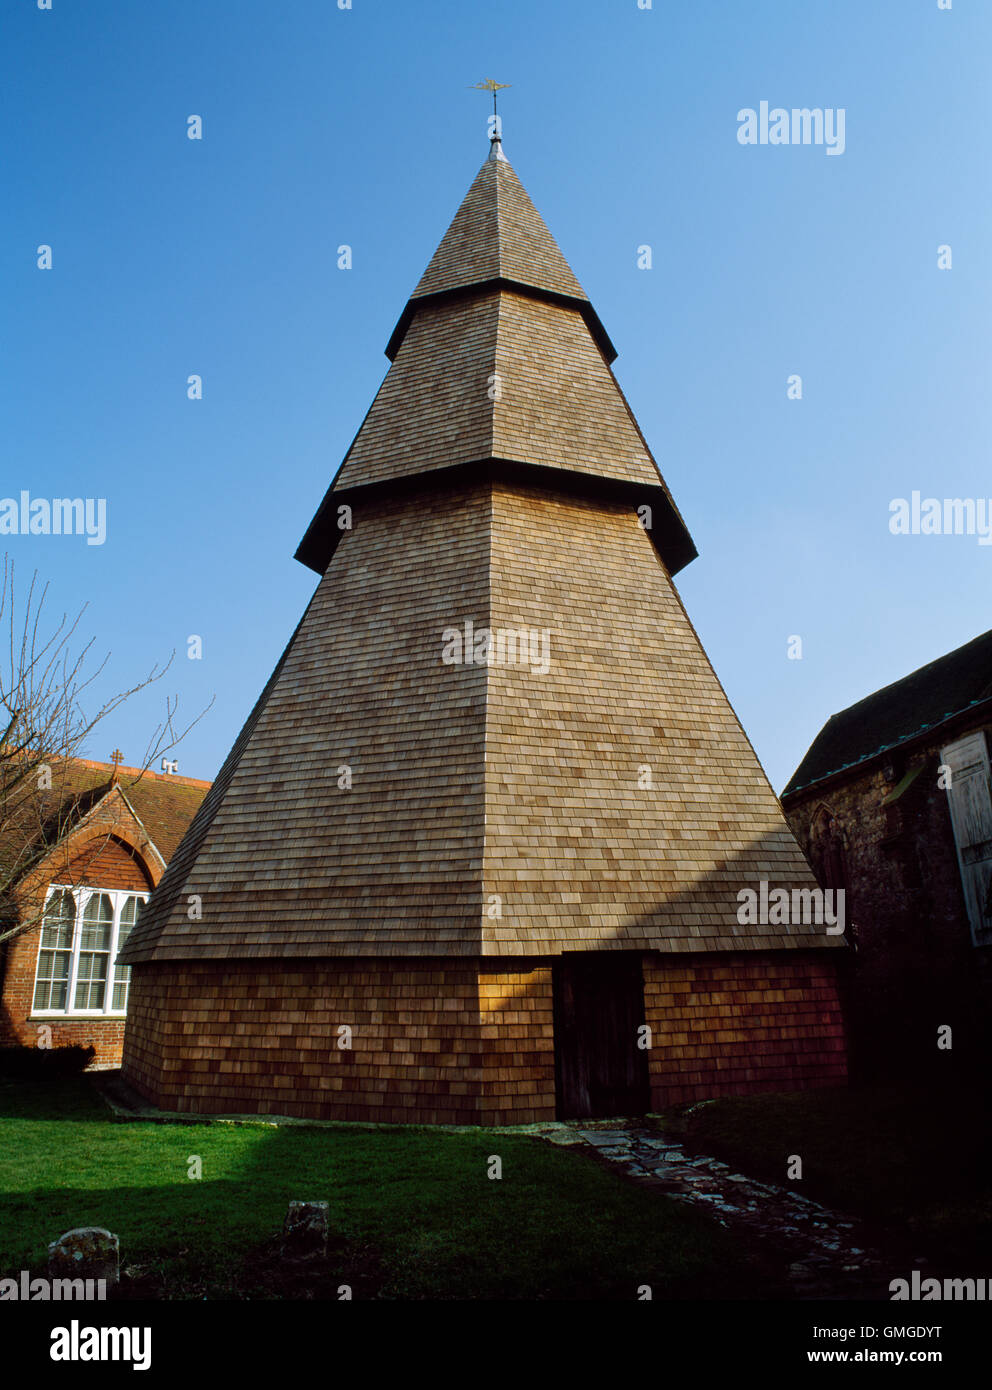 Freistehenden hölzernen Glockenturm Turm der Brookland Kirche, Kent, bestehend aus 3 gestuften achteckigen Pyramiden: Rahmen stammt aus c. 1260, Schindeln aus 1991. Stockfoto